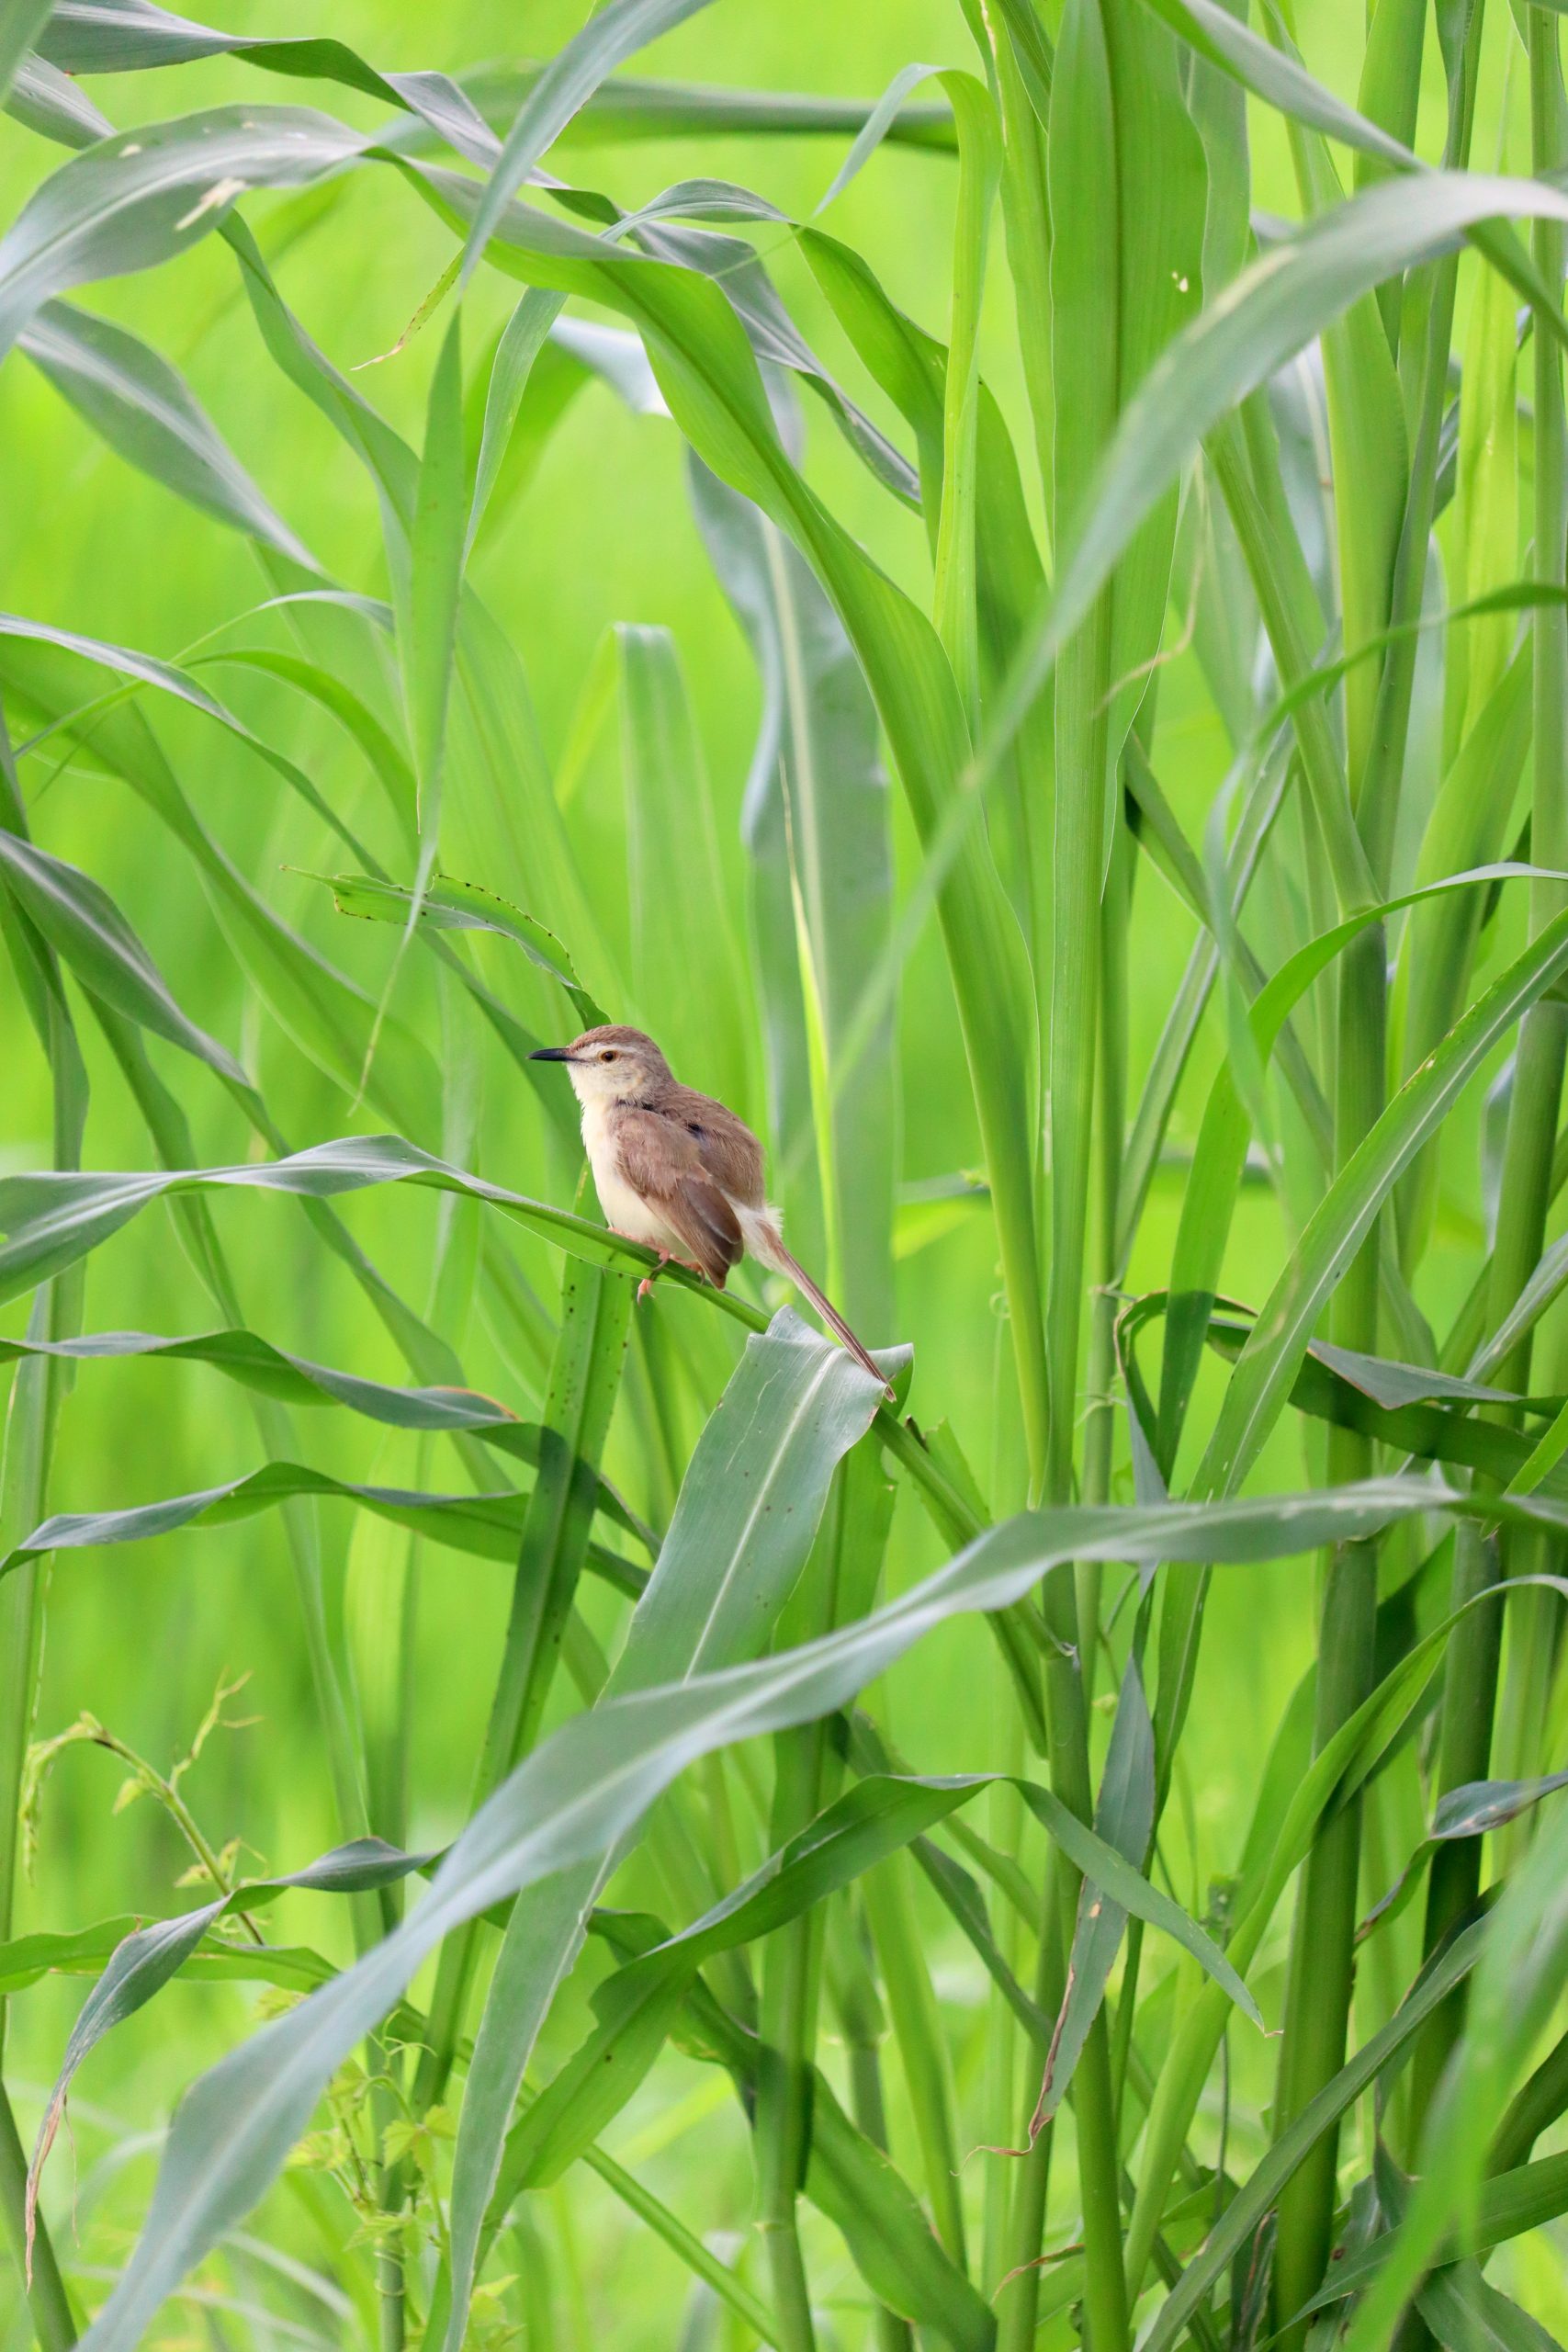 Sparrow bird on a green leaf